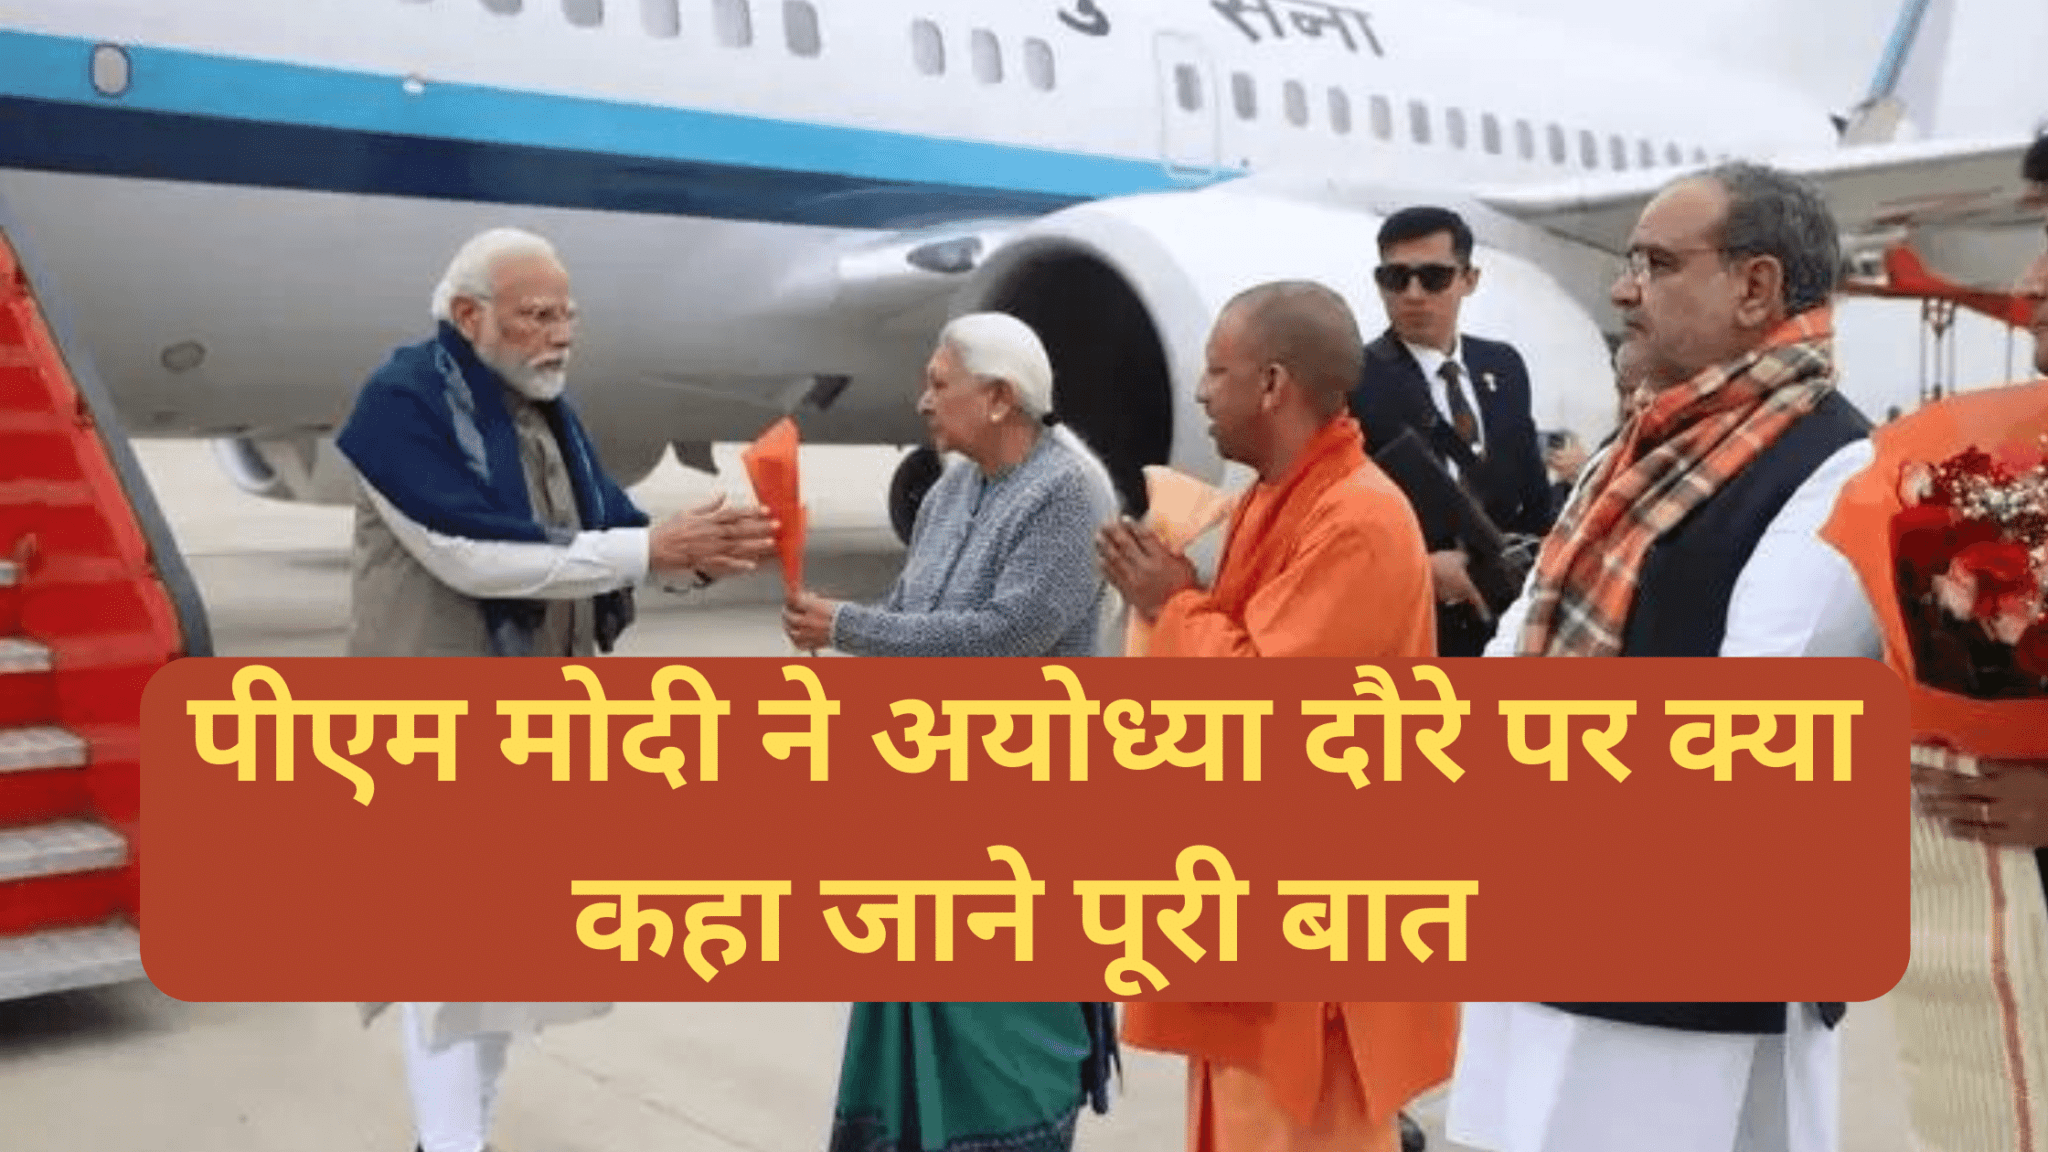 PM Modi Ayodhya Visit:पीएम मोदी ने अयोध्या हवाई अड्डे का उद्घाटन किया और उत्तर प्रदेश में 15,700 करोड़ रुपये की परियोजनाओं की आधारशिला रखी